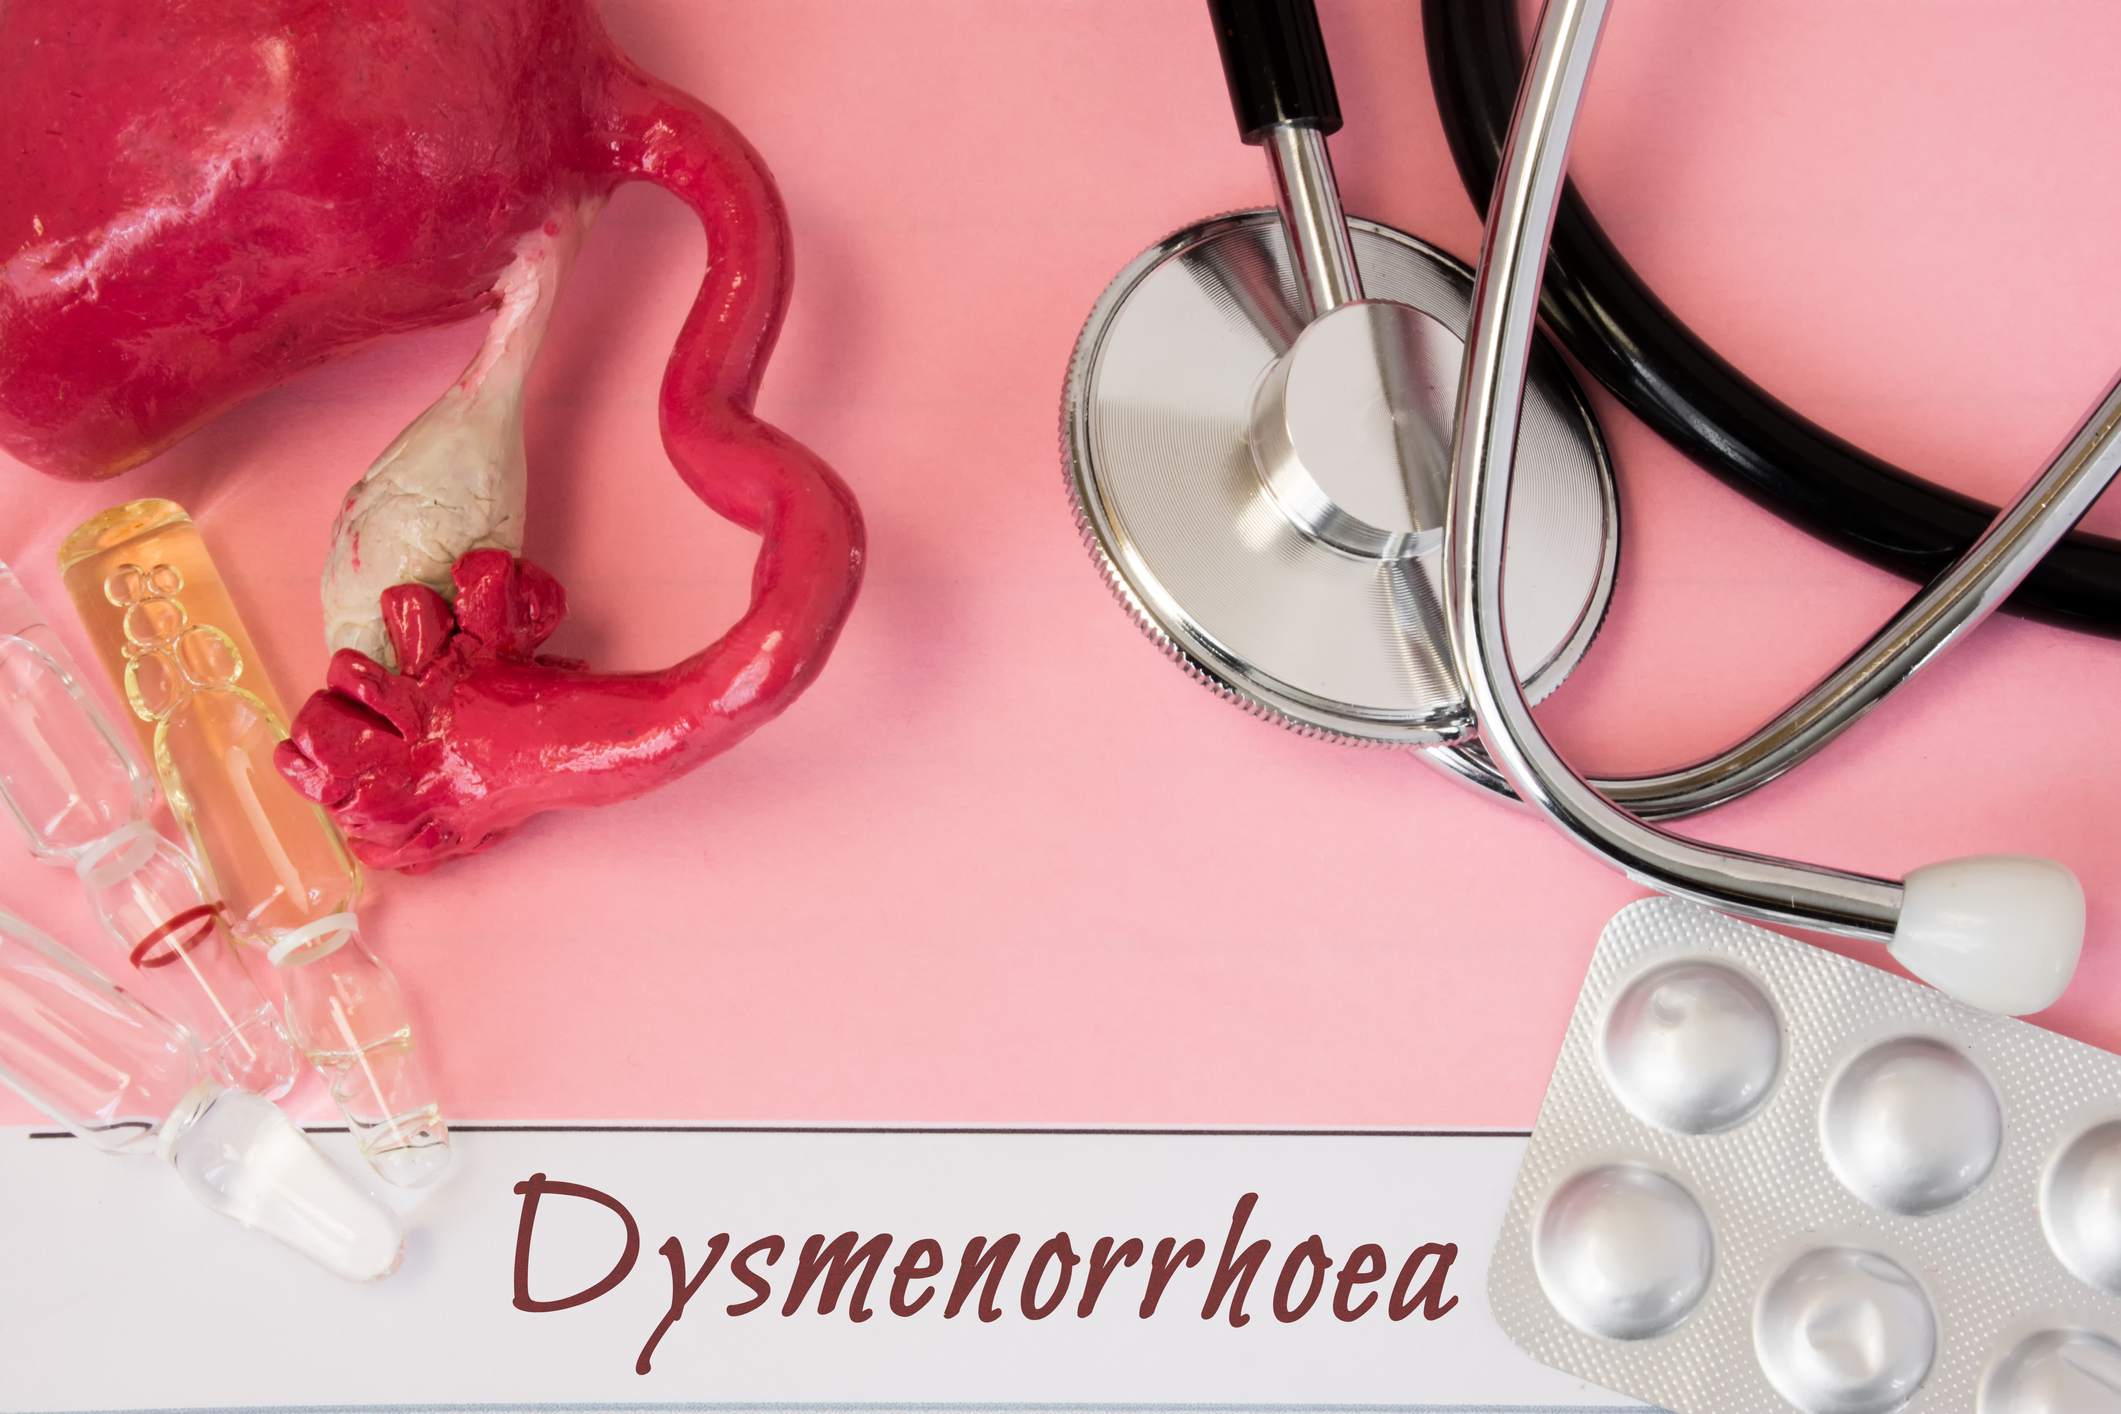 Diagnosis: dysmenorrhea